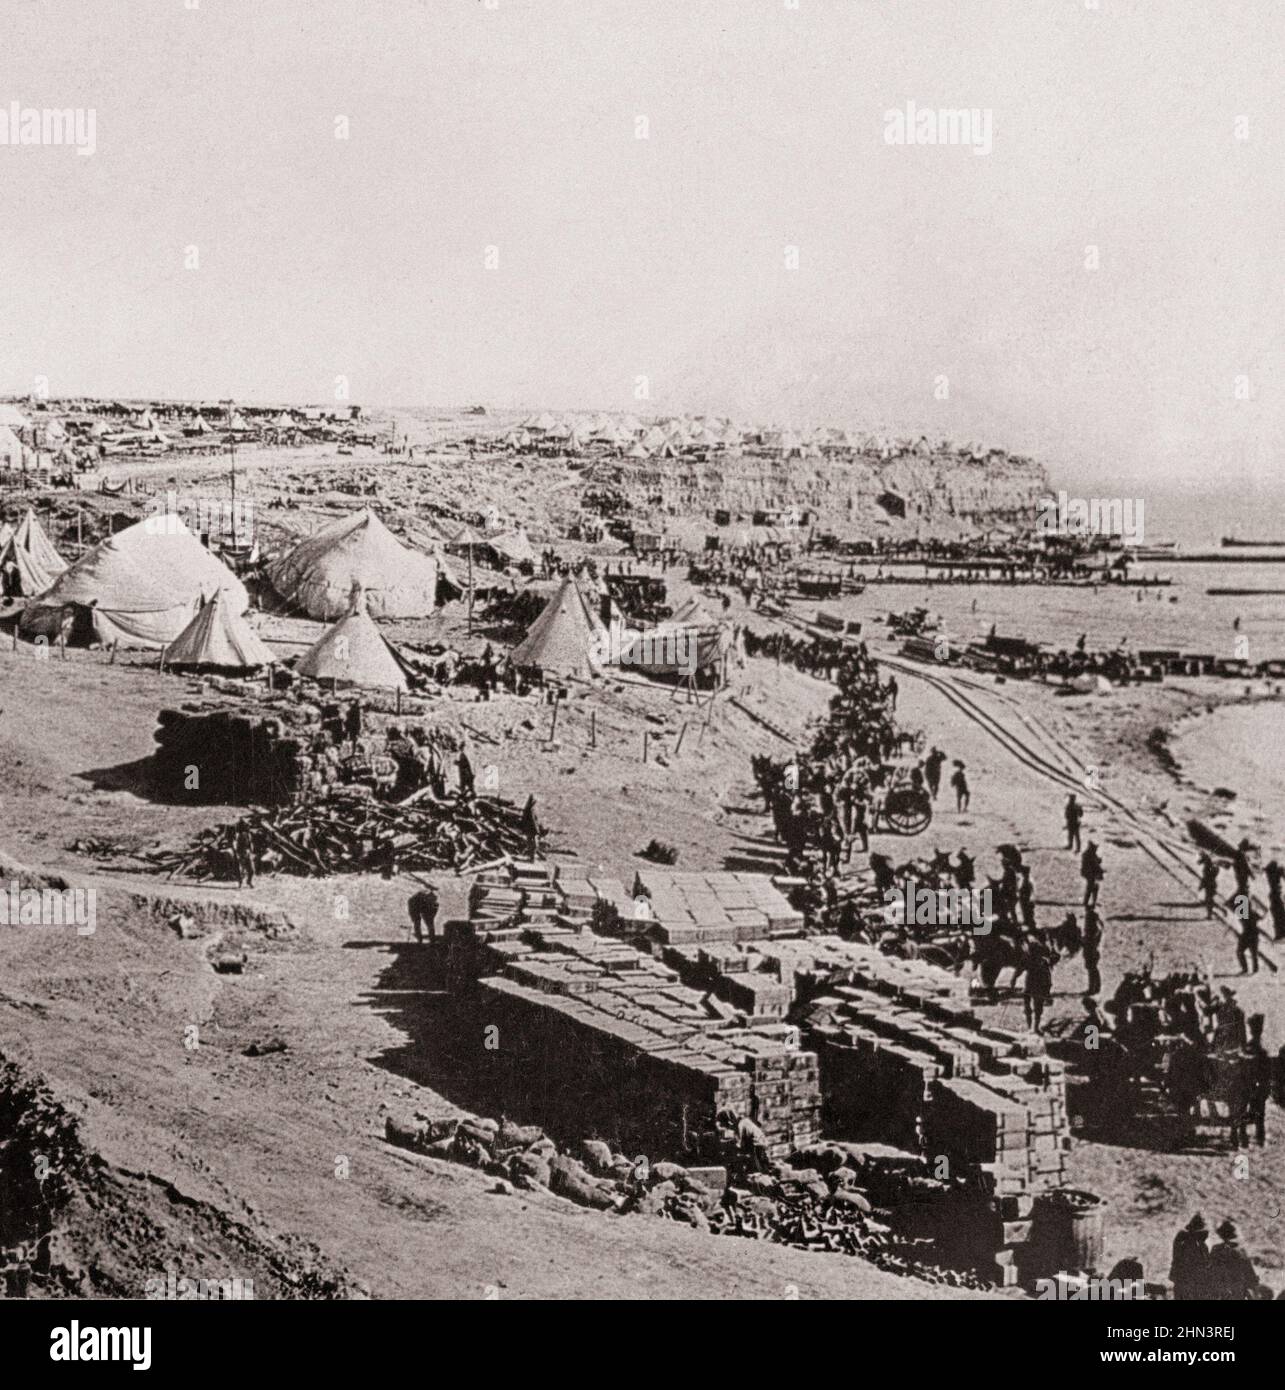 Photo d'époque de la première Guerre mondiale 1914-1918. West Beach, Gallipoli. Scène de débarquement britannique et de terribles batailles Banque D'Images